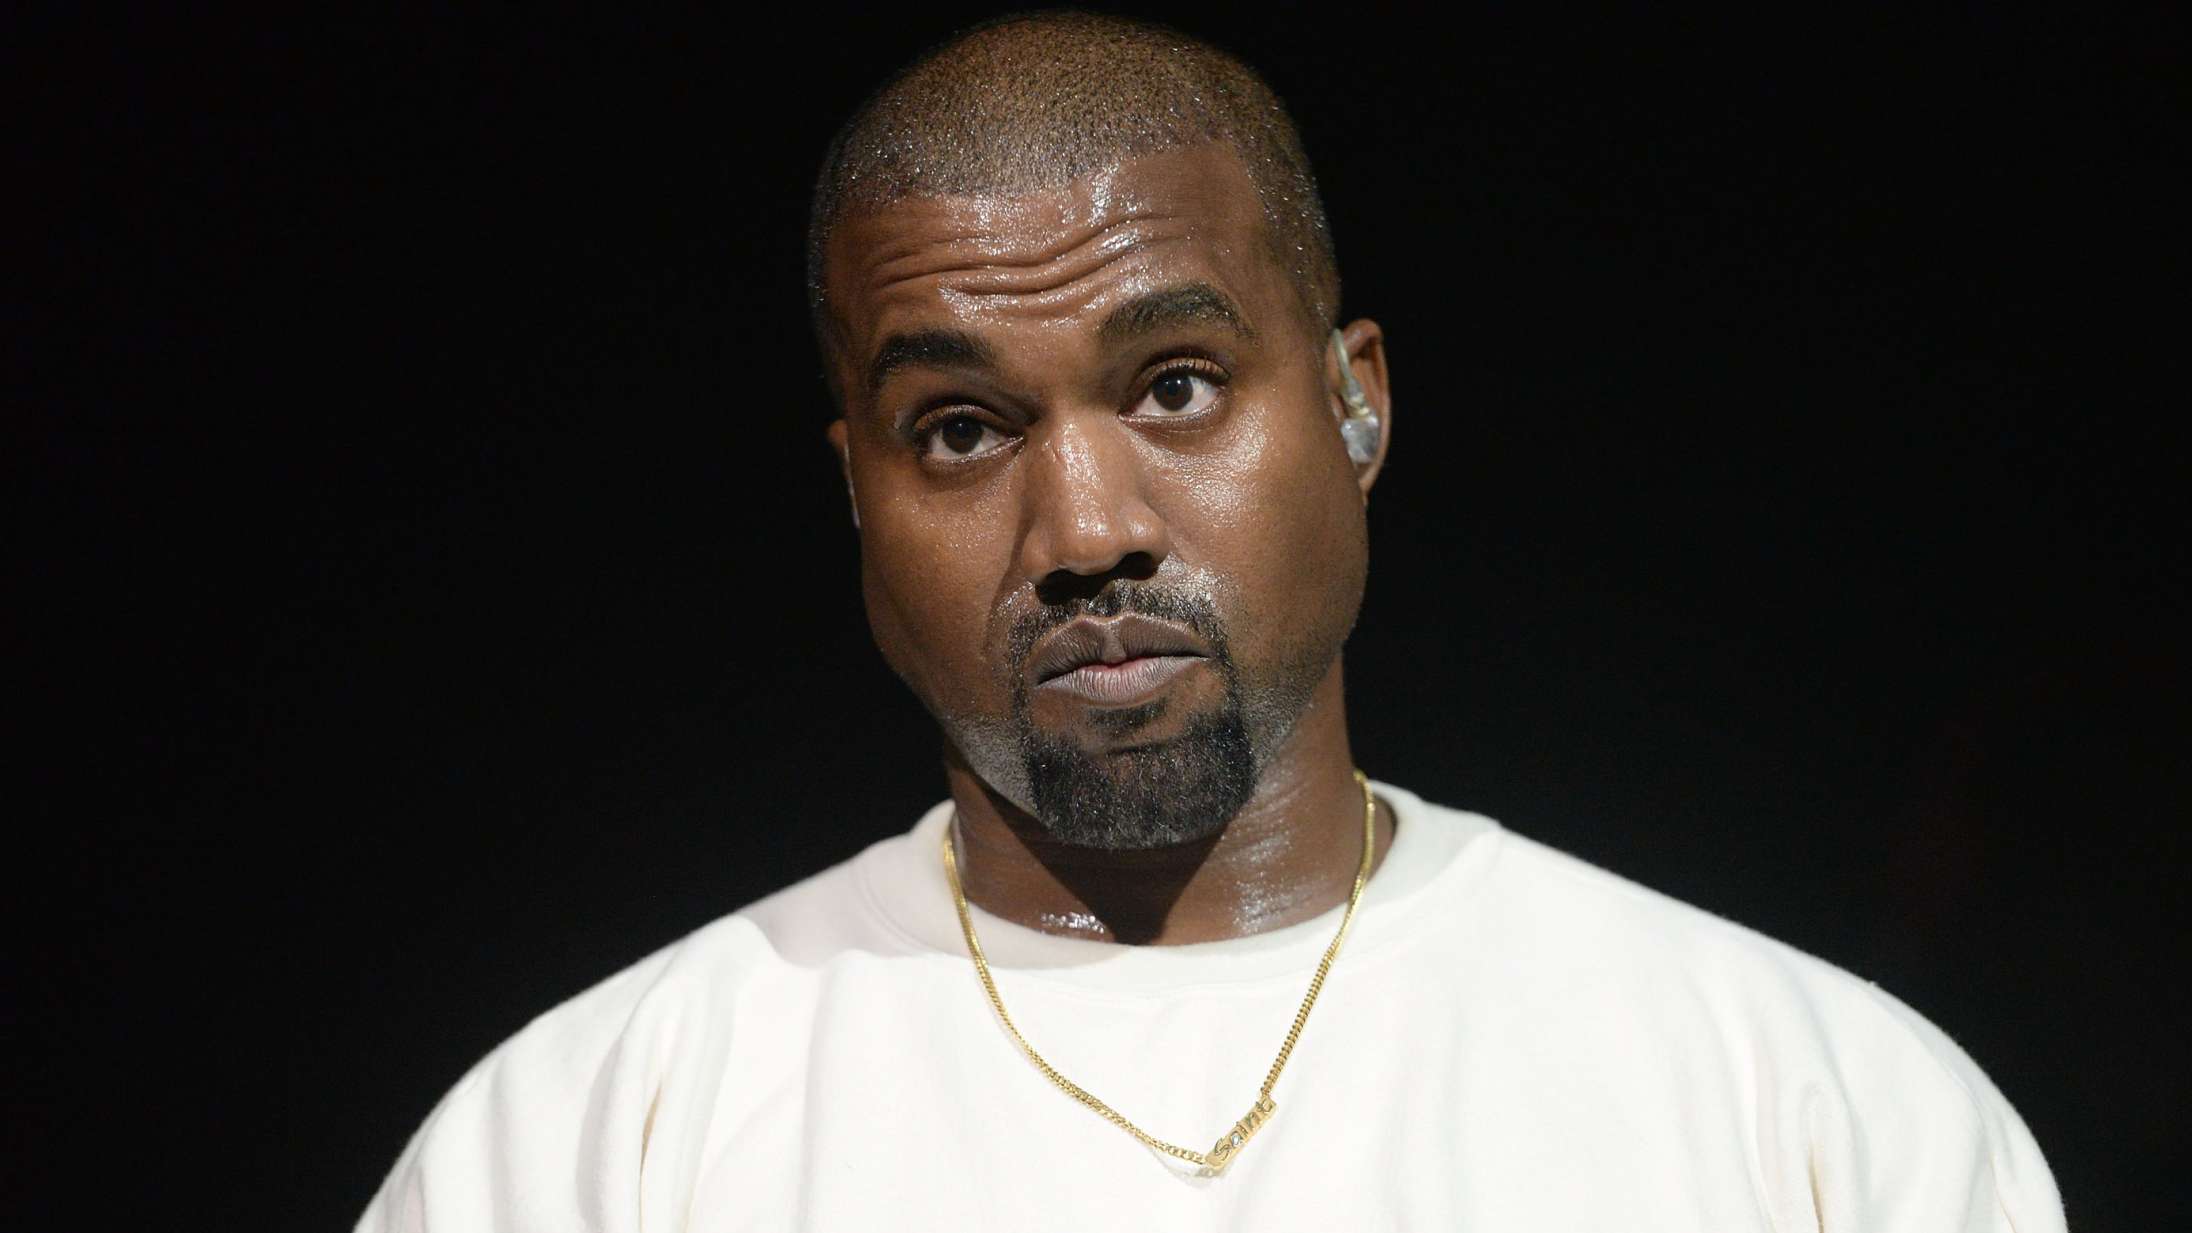 Instagram indskrænker Kanye Wests profil efter kontroversielle opslag – han svarer igen på Twitter